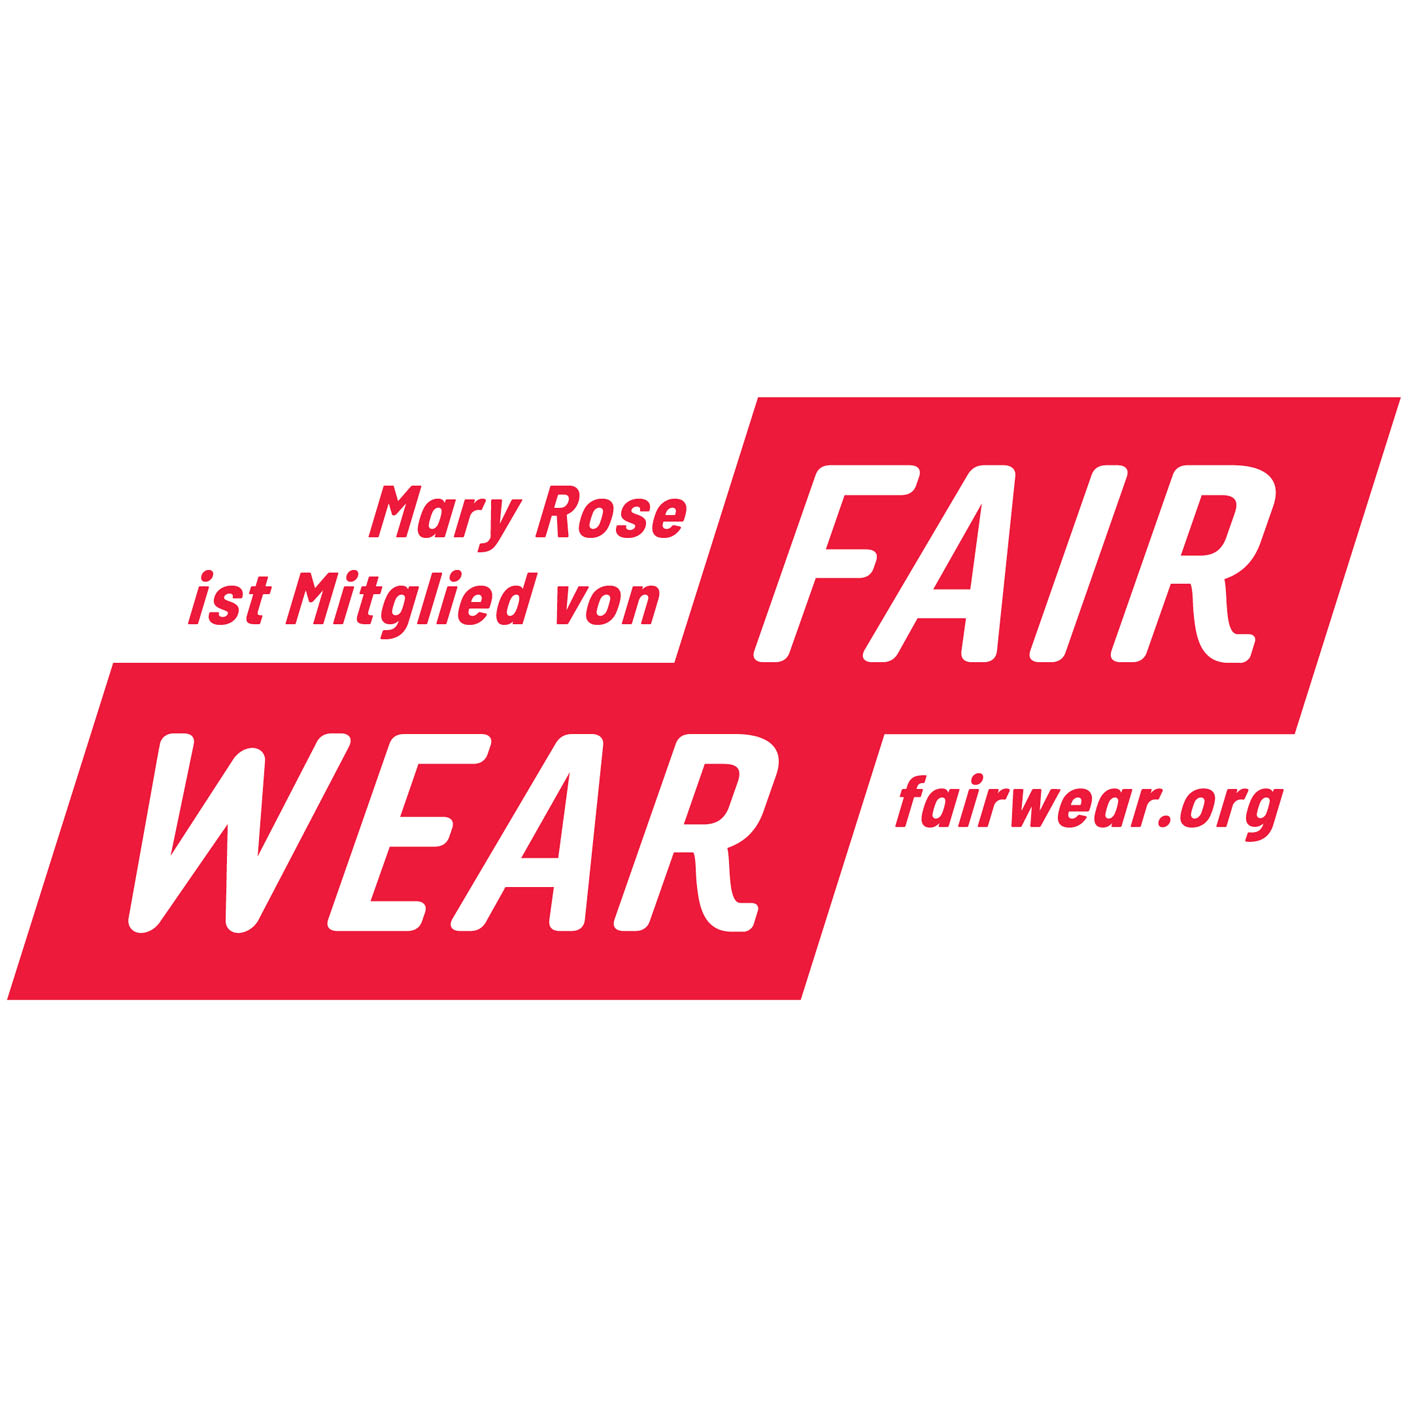 https://maryrose.at/unsere-werte/#fairwear